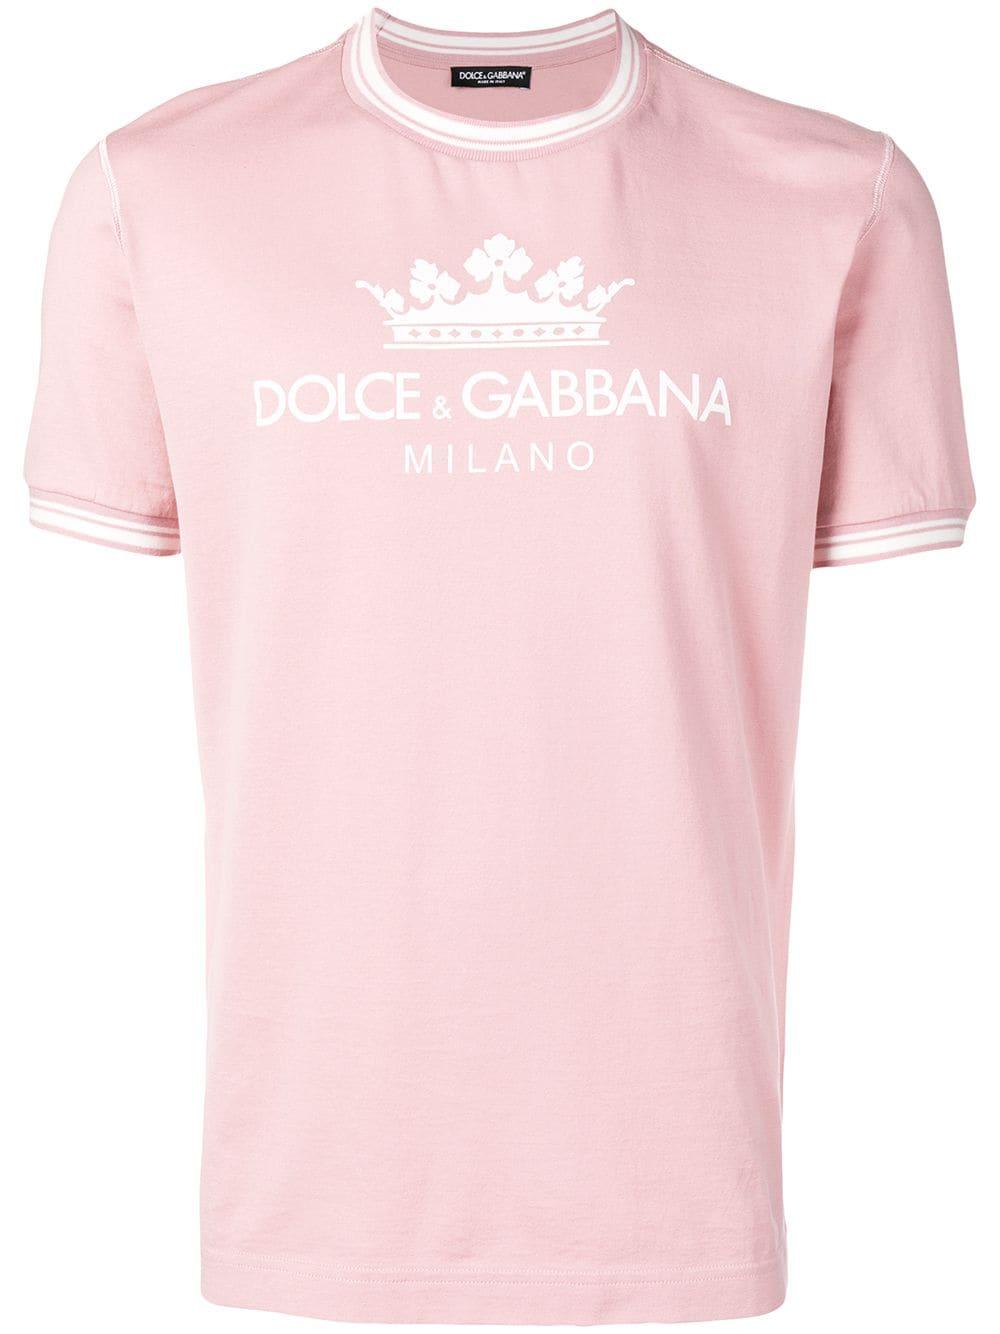 Dolce & Gabbana Dolce&gabbana Milano T-shirt In Cotton in Pink for 